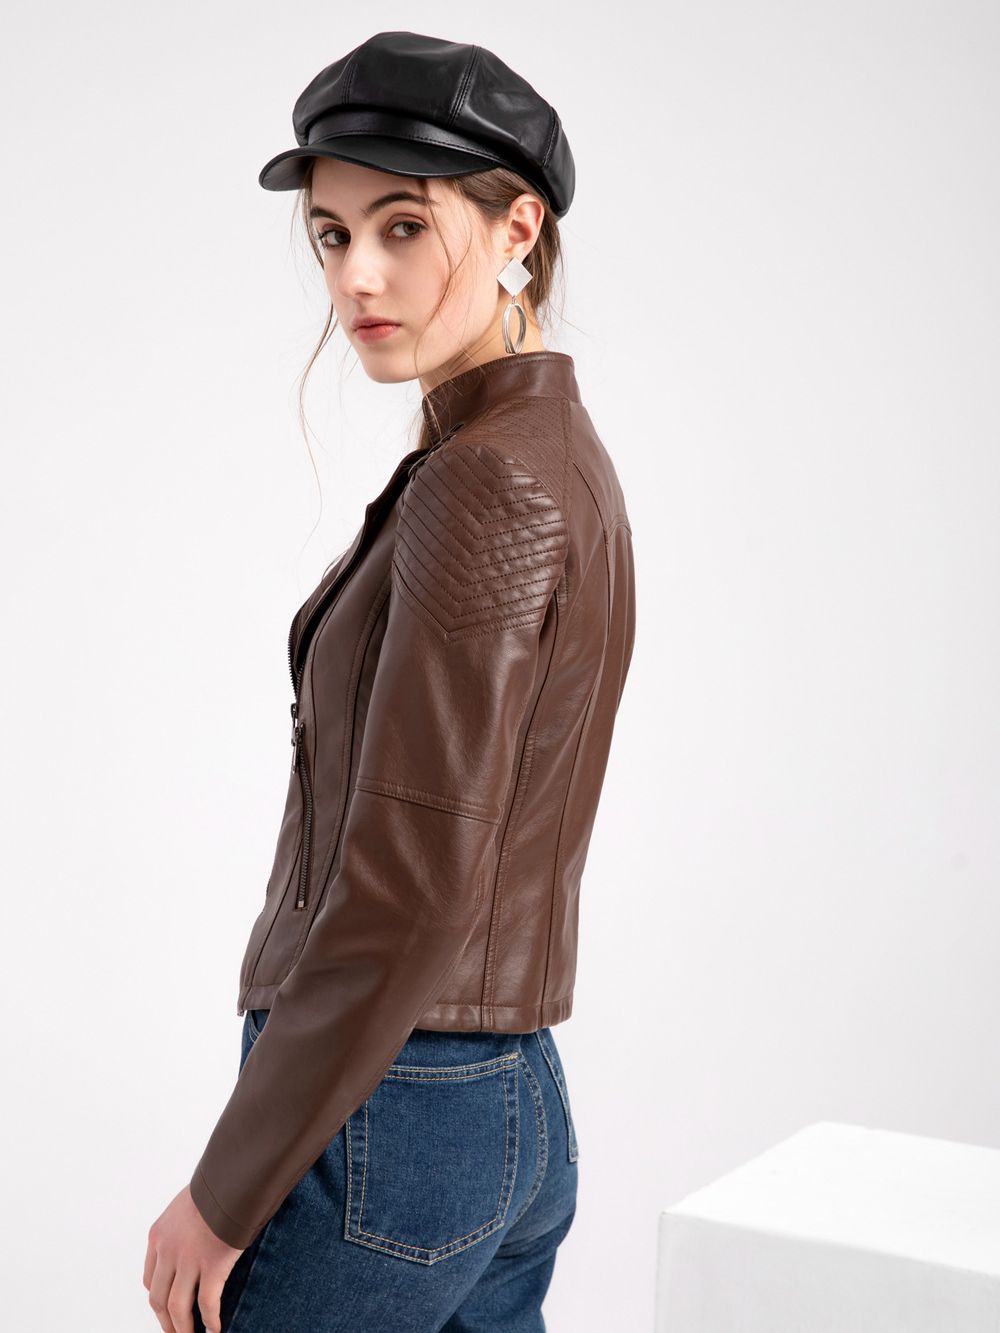 Pu Faux Women's Leather Jackets Long Sleeve Zipper Slim